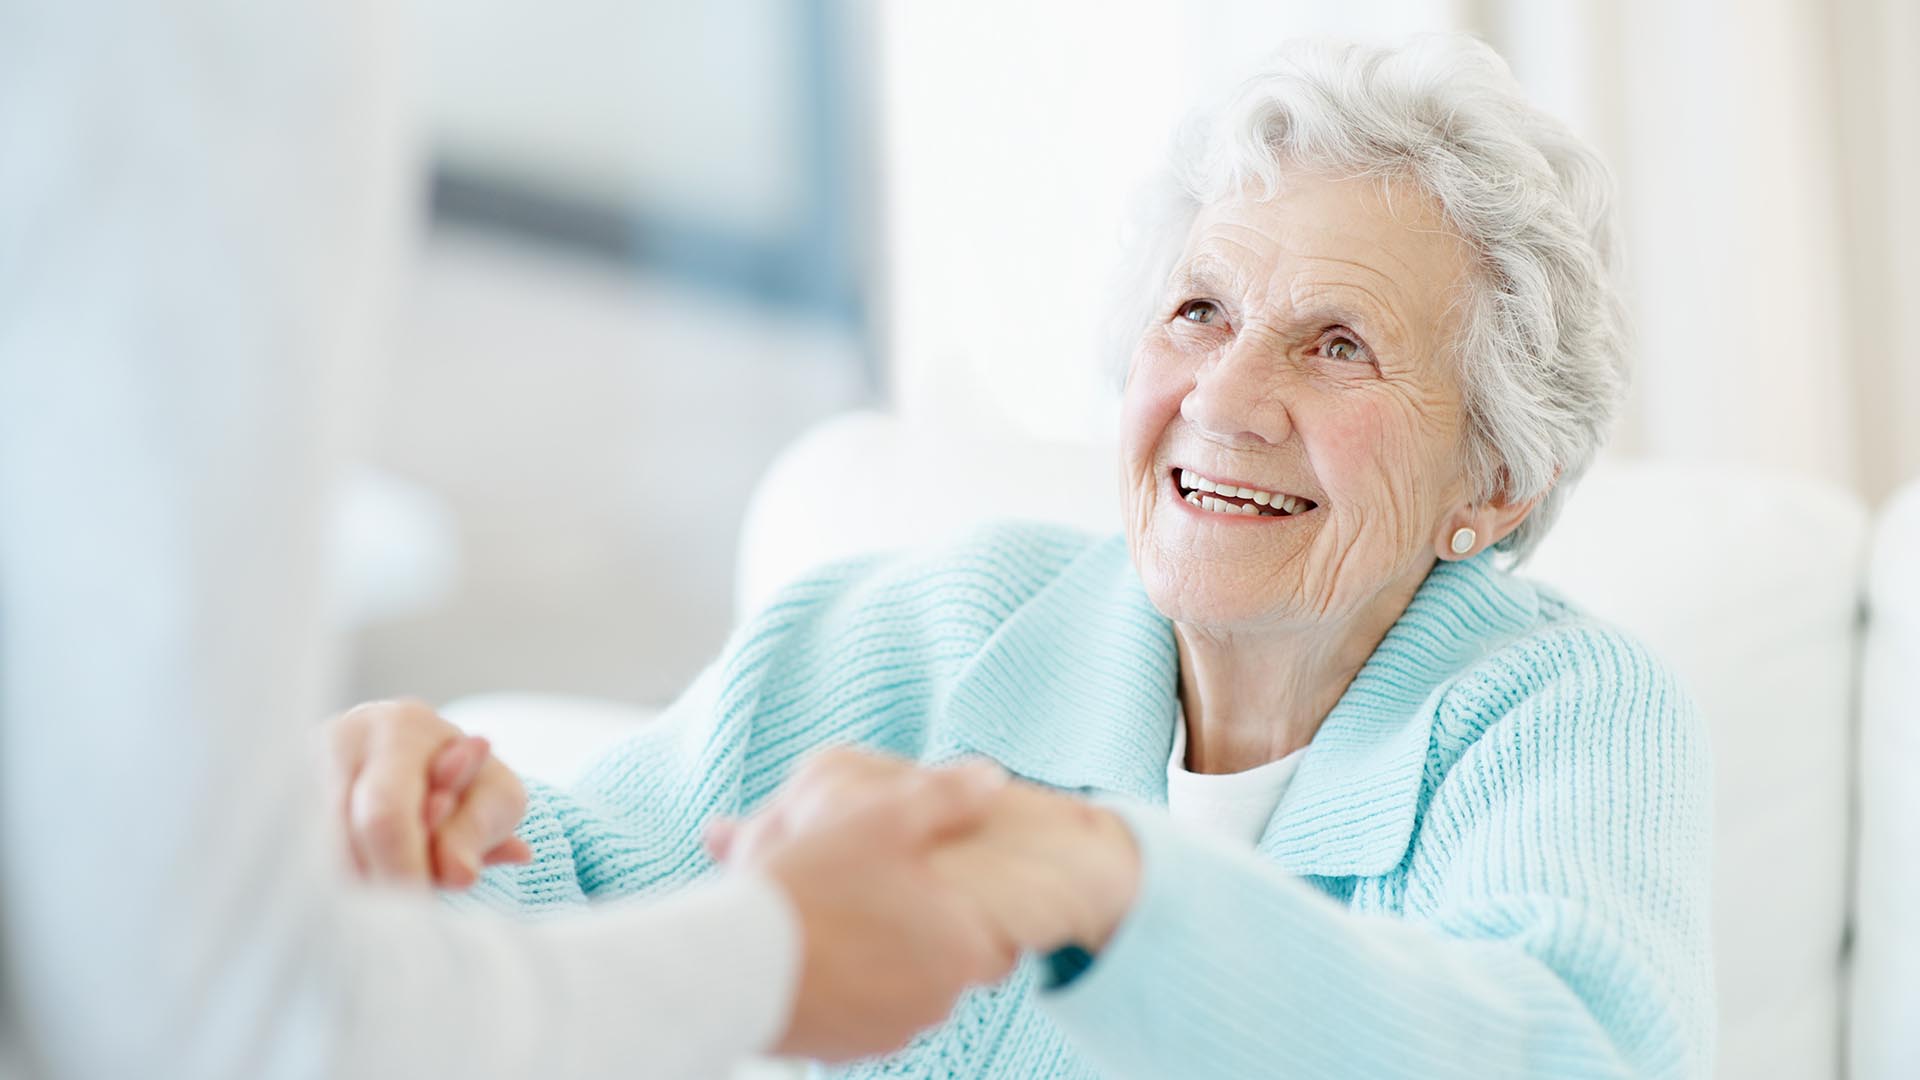 Alter Damen mit weißen Haaren und hellblauem Pullover, die freudig strahlt. Ihr werden helfende Hände gereicht, um einfacher aufstehen zu können.